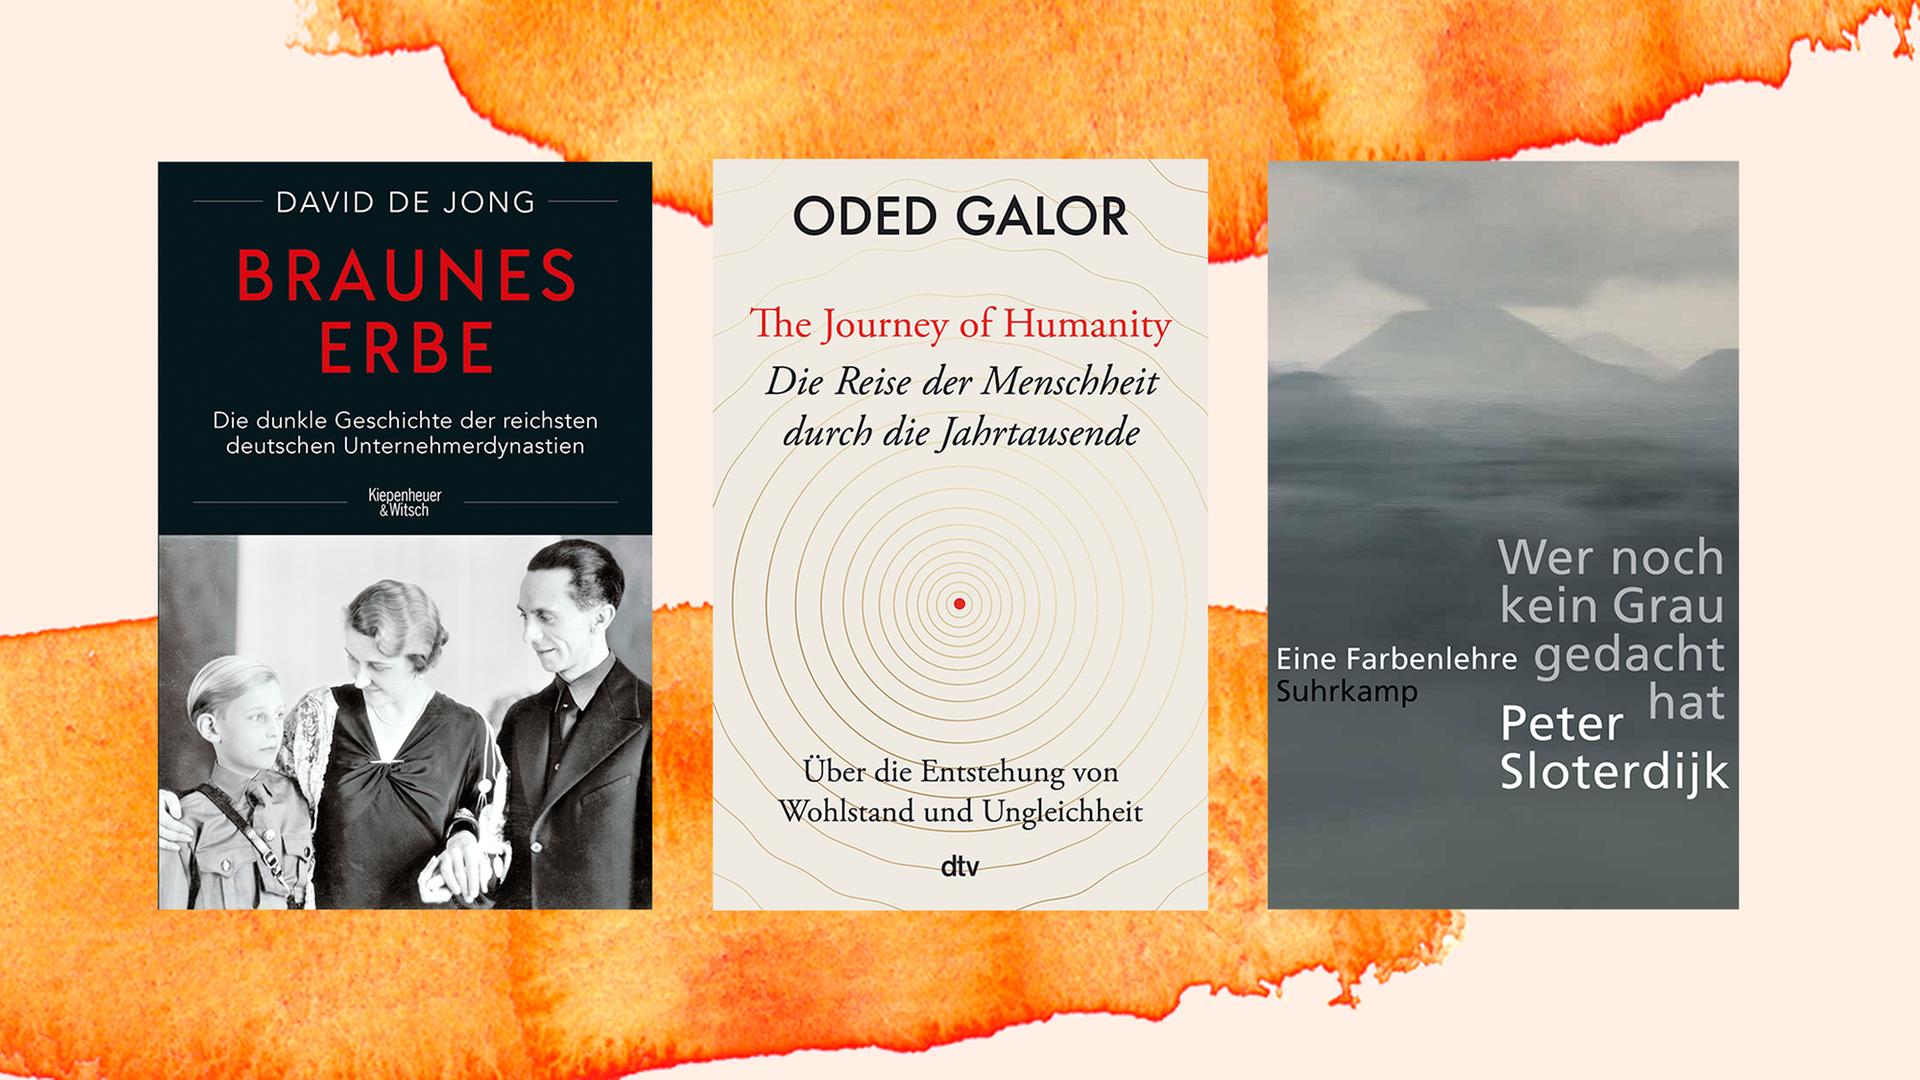 Von links nach rechts sind die Cover der  Bücher von David De Jong, "Braunes Erbe"; von Oded Galor, "Die Reise der Menschheit durch die Jahrtausende"; und von Peter Sloterdijk, "Wer noch kein Grau gedacht hat", zu sehen. Sie sind auf einen orange-weißen Hintergrund montiert.
 